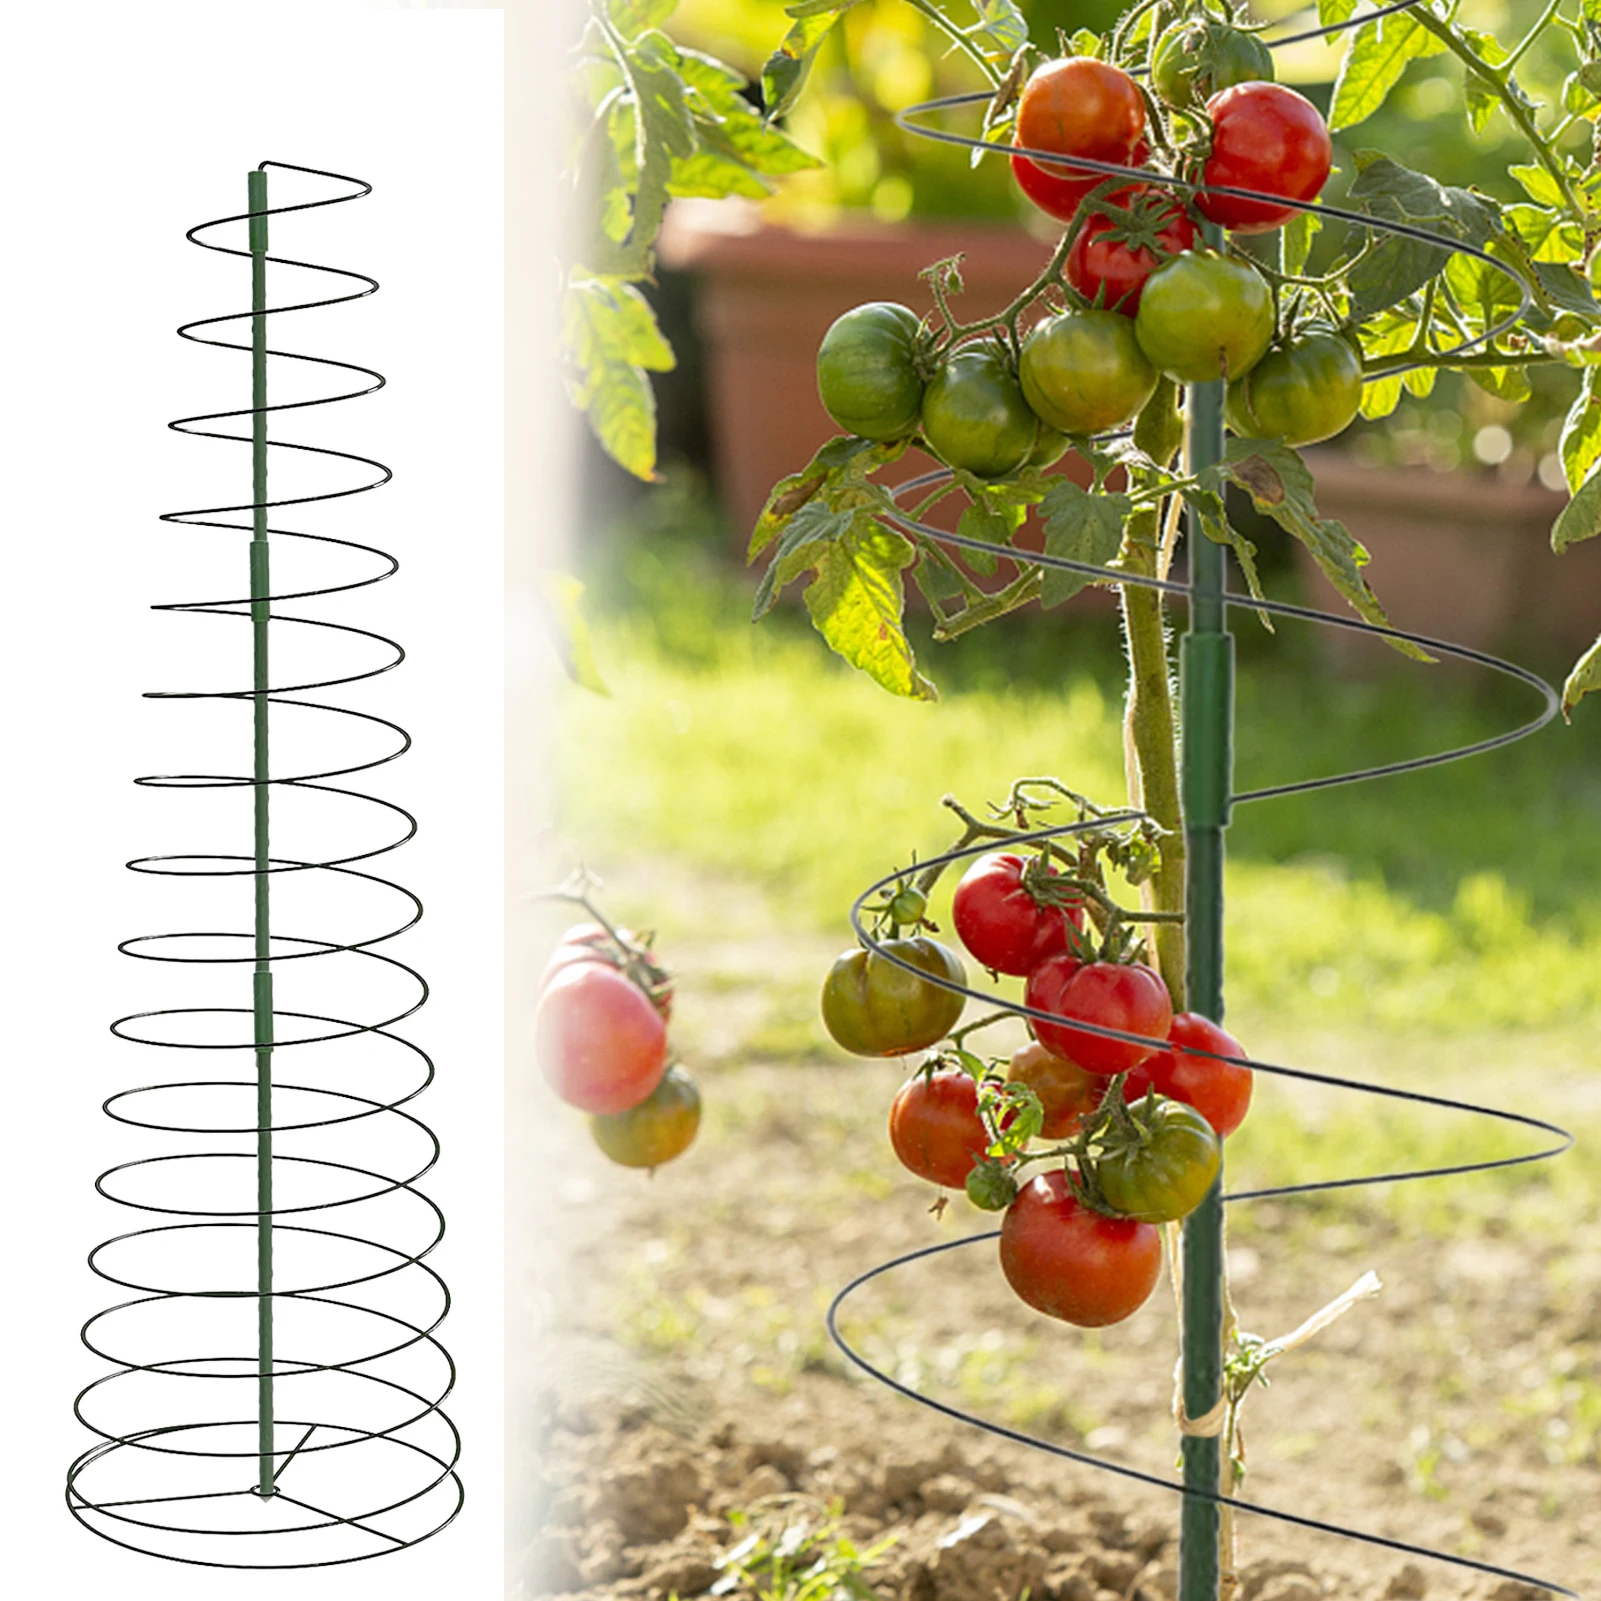 دوامة دعم النبات لمط الطماطم الداعم قفص كليمنبلانت حصة برج ل أصائص زرع زهرة الأوركيد زنبق داليا كليماتيس